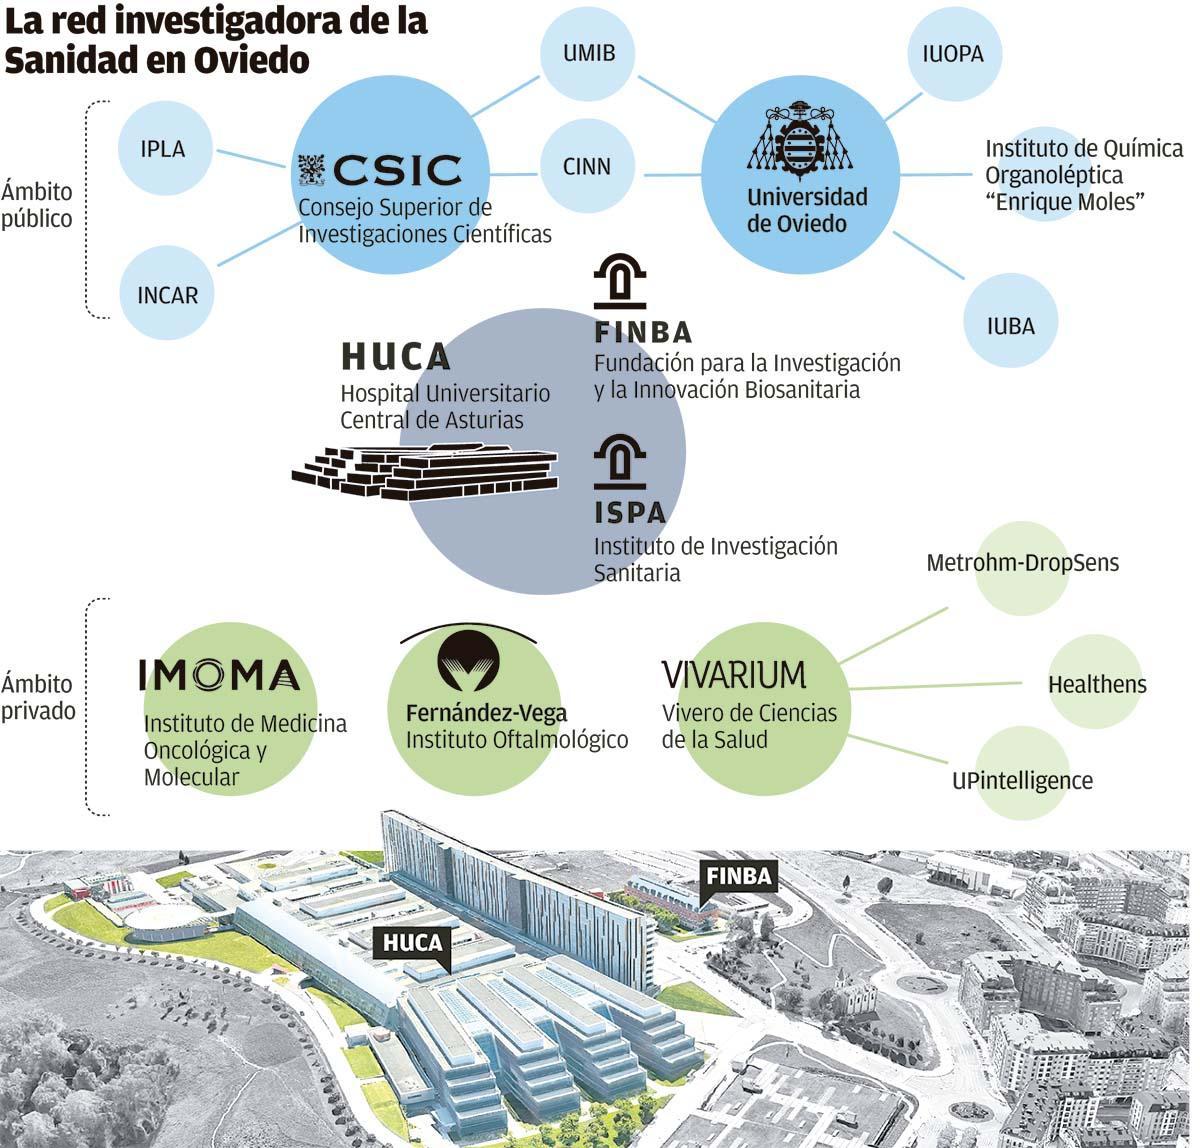 La red investigadora de la sanidad de Oviedo